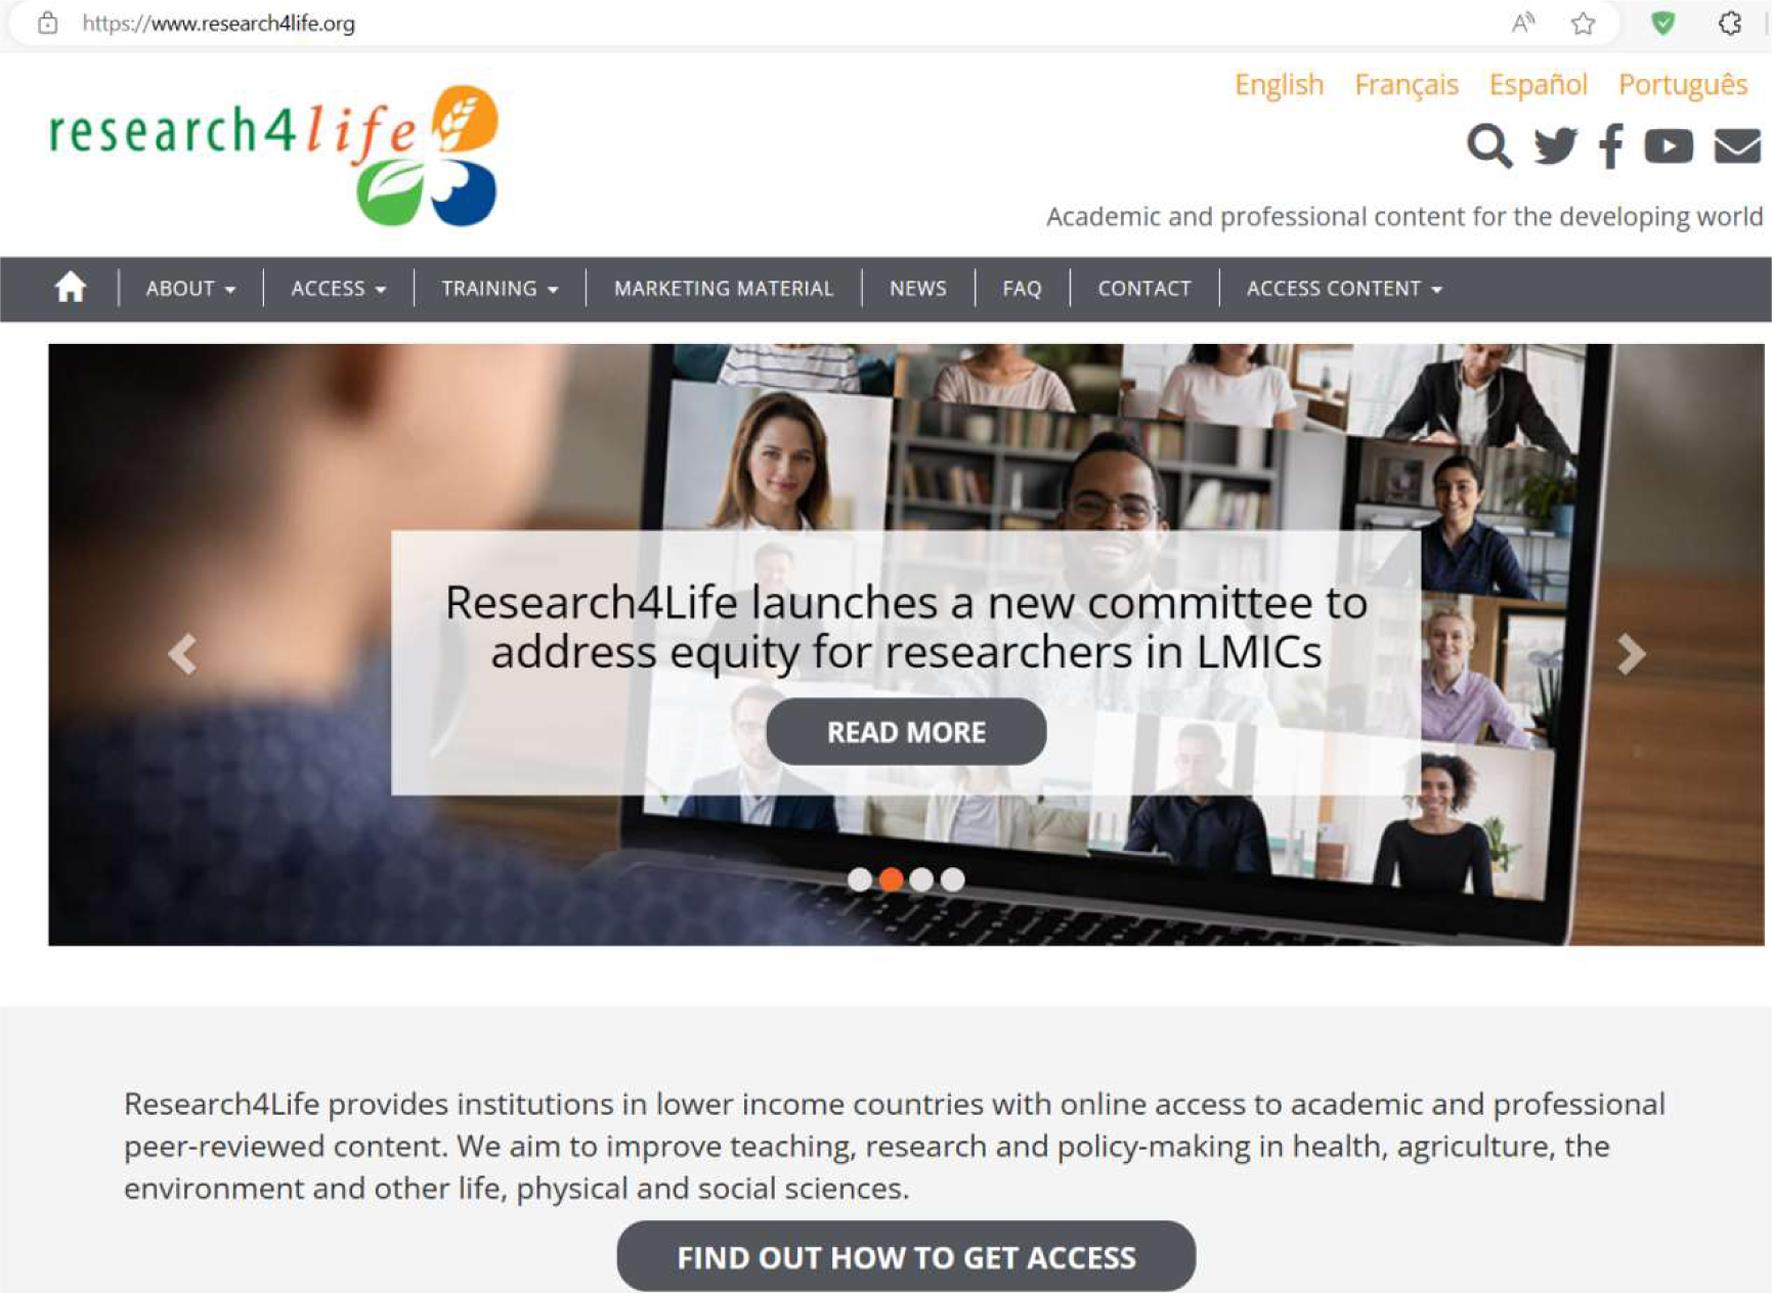 Research4Life，一家为“低收入和中等收入国家的机构提供在线获取学术和专业同行评审内容”的慈善组织（截图来自Research4Life官网Home - Research4Life）。